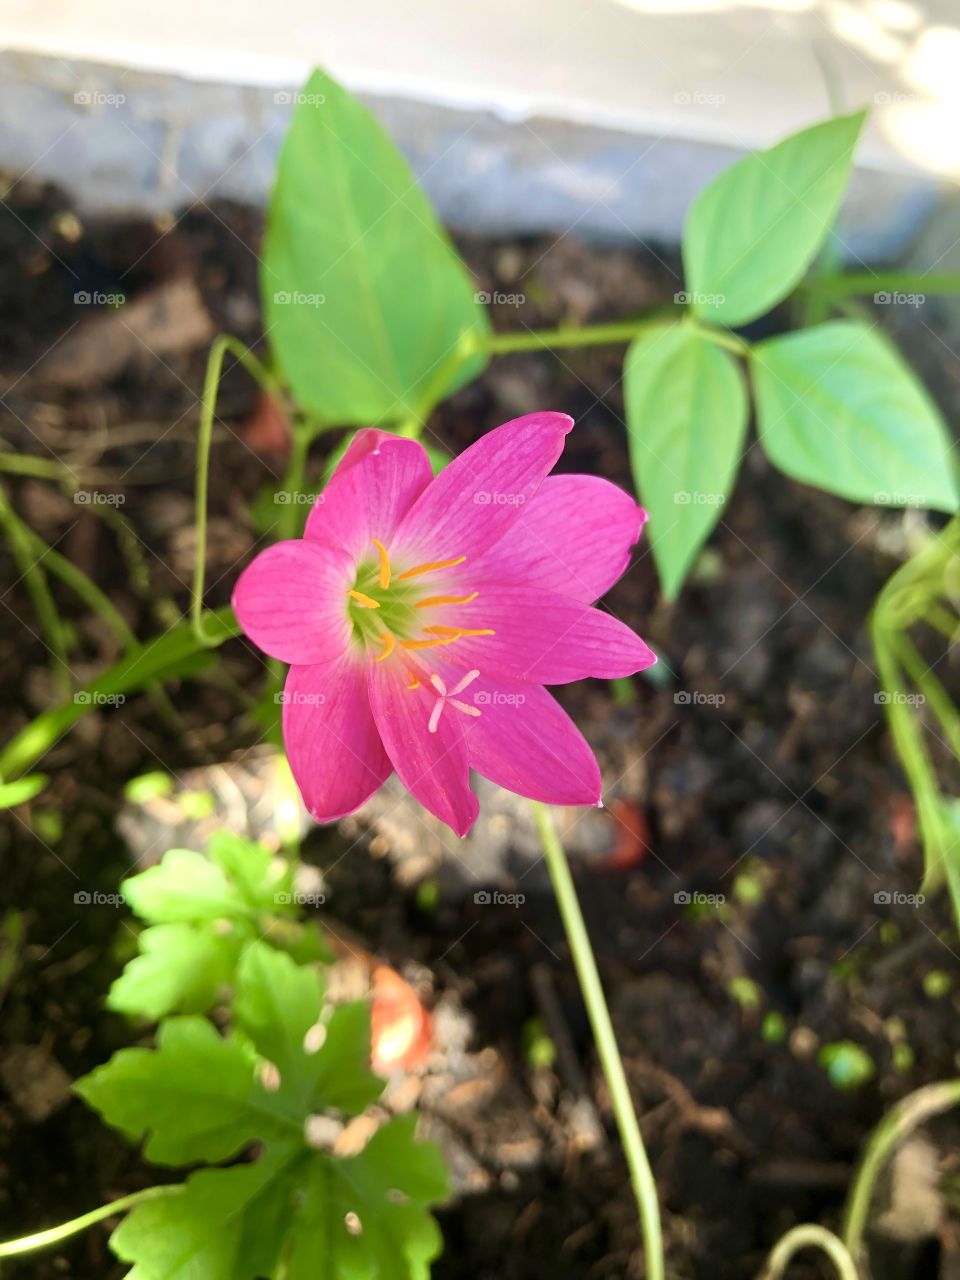 Flower # pink flower # blooming 